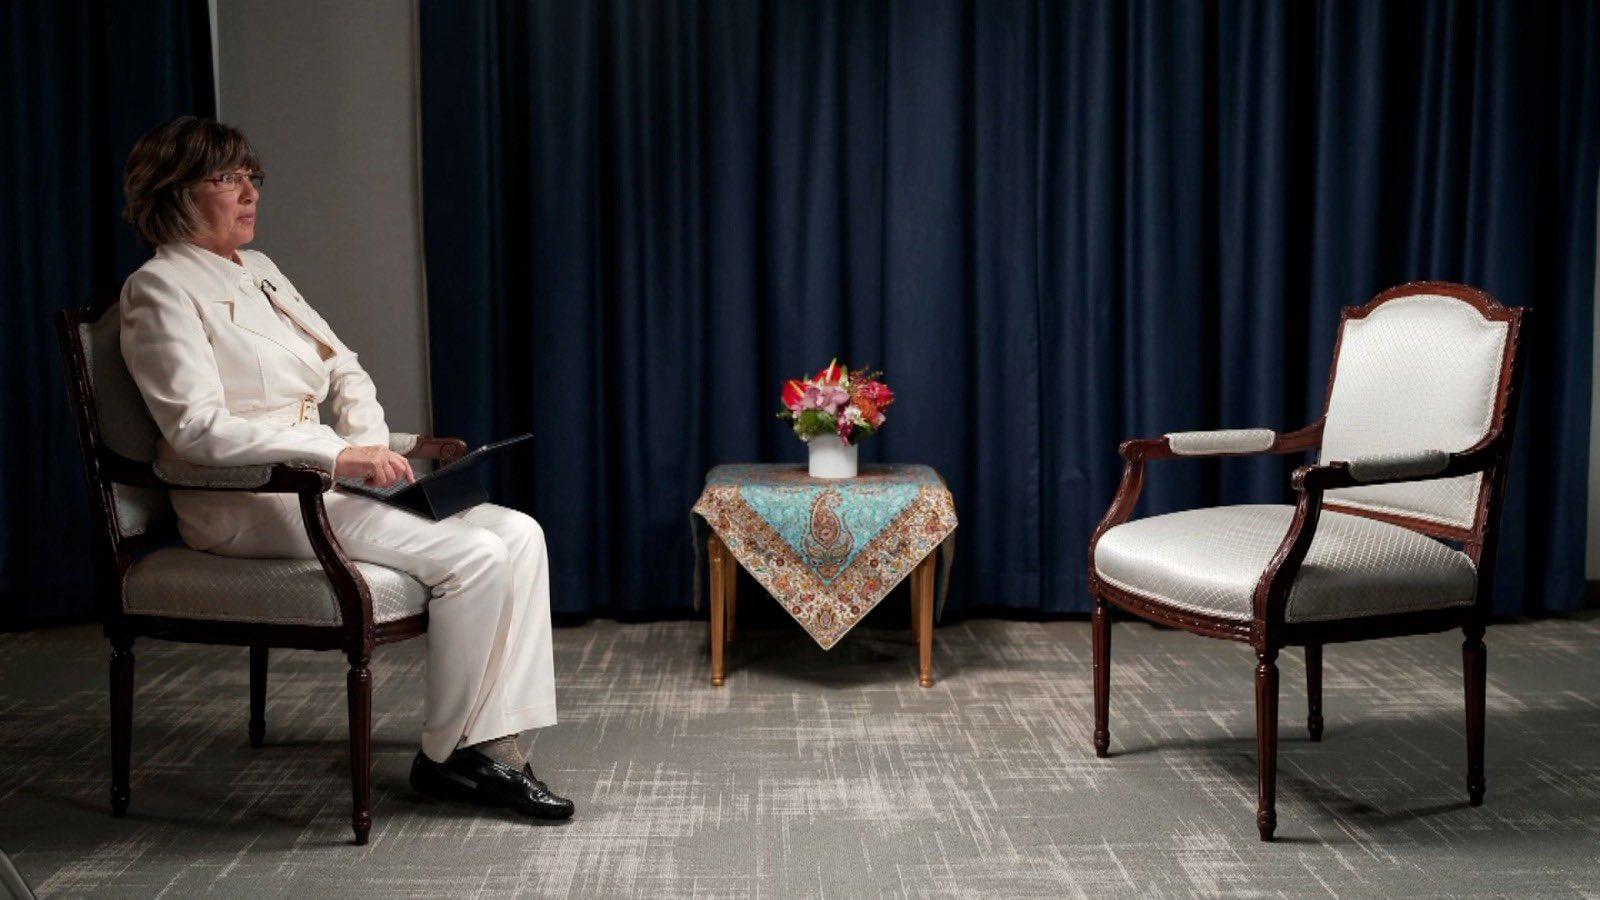 Iranski predsjednik odbio intervju sa poznatom novinarkom Amanpur jer nije nosila maramu